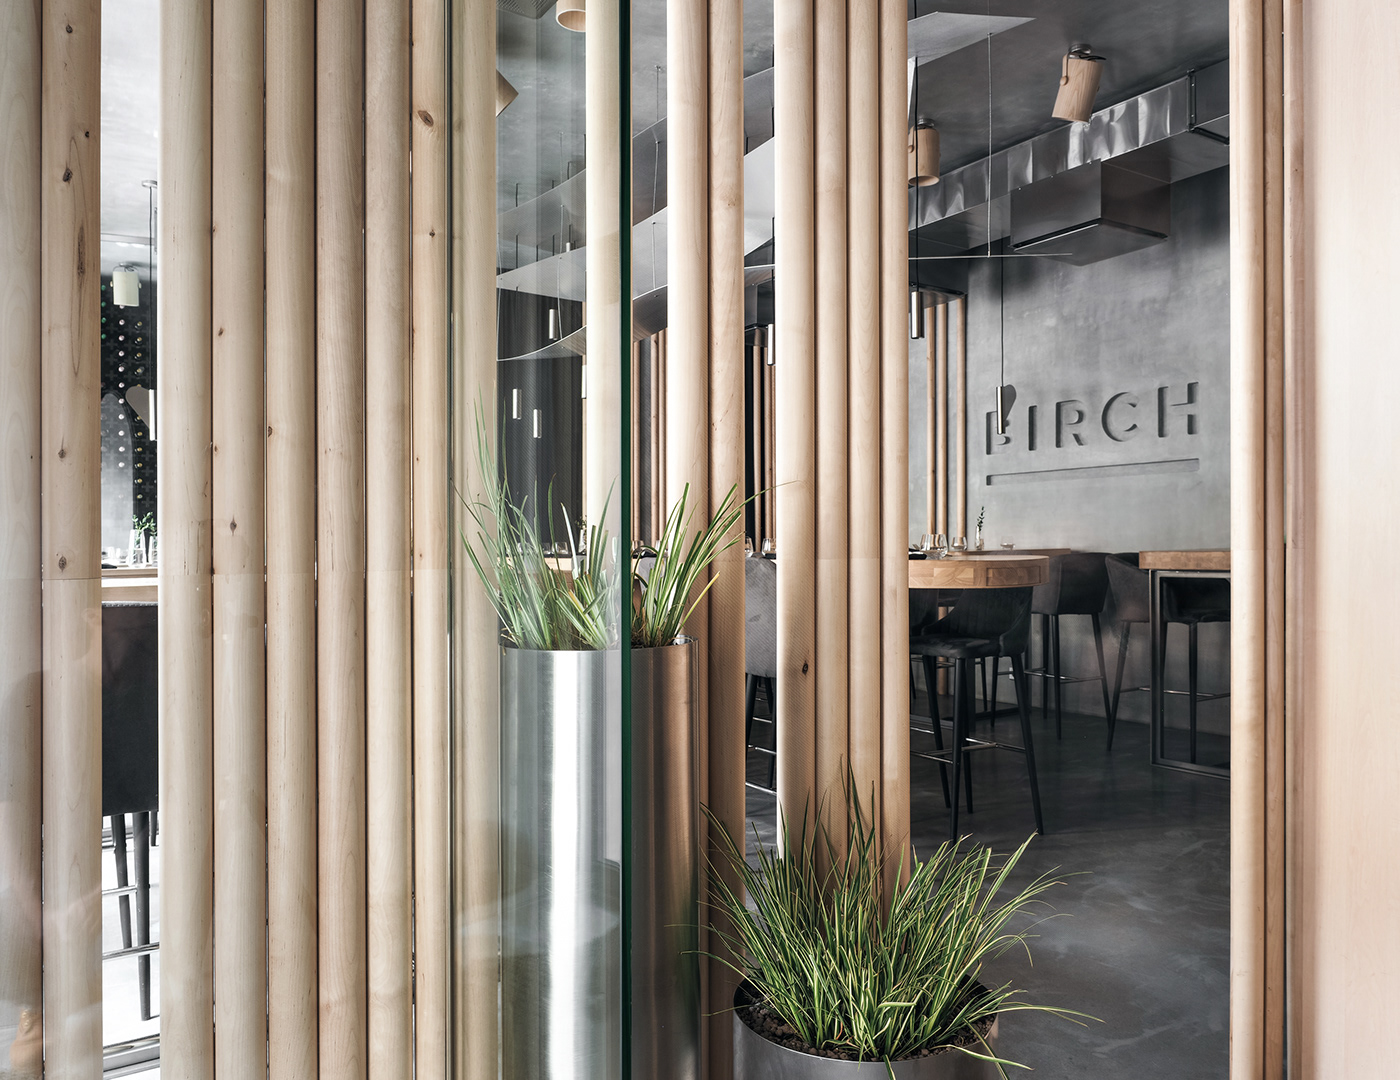 wood concrete design Interior modern birch morenarchitecture Ethnic metal Minimalism